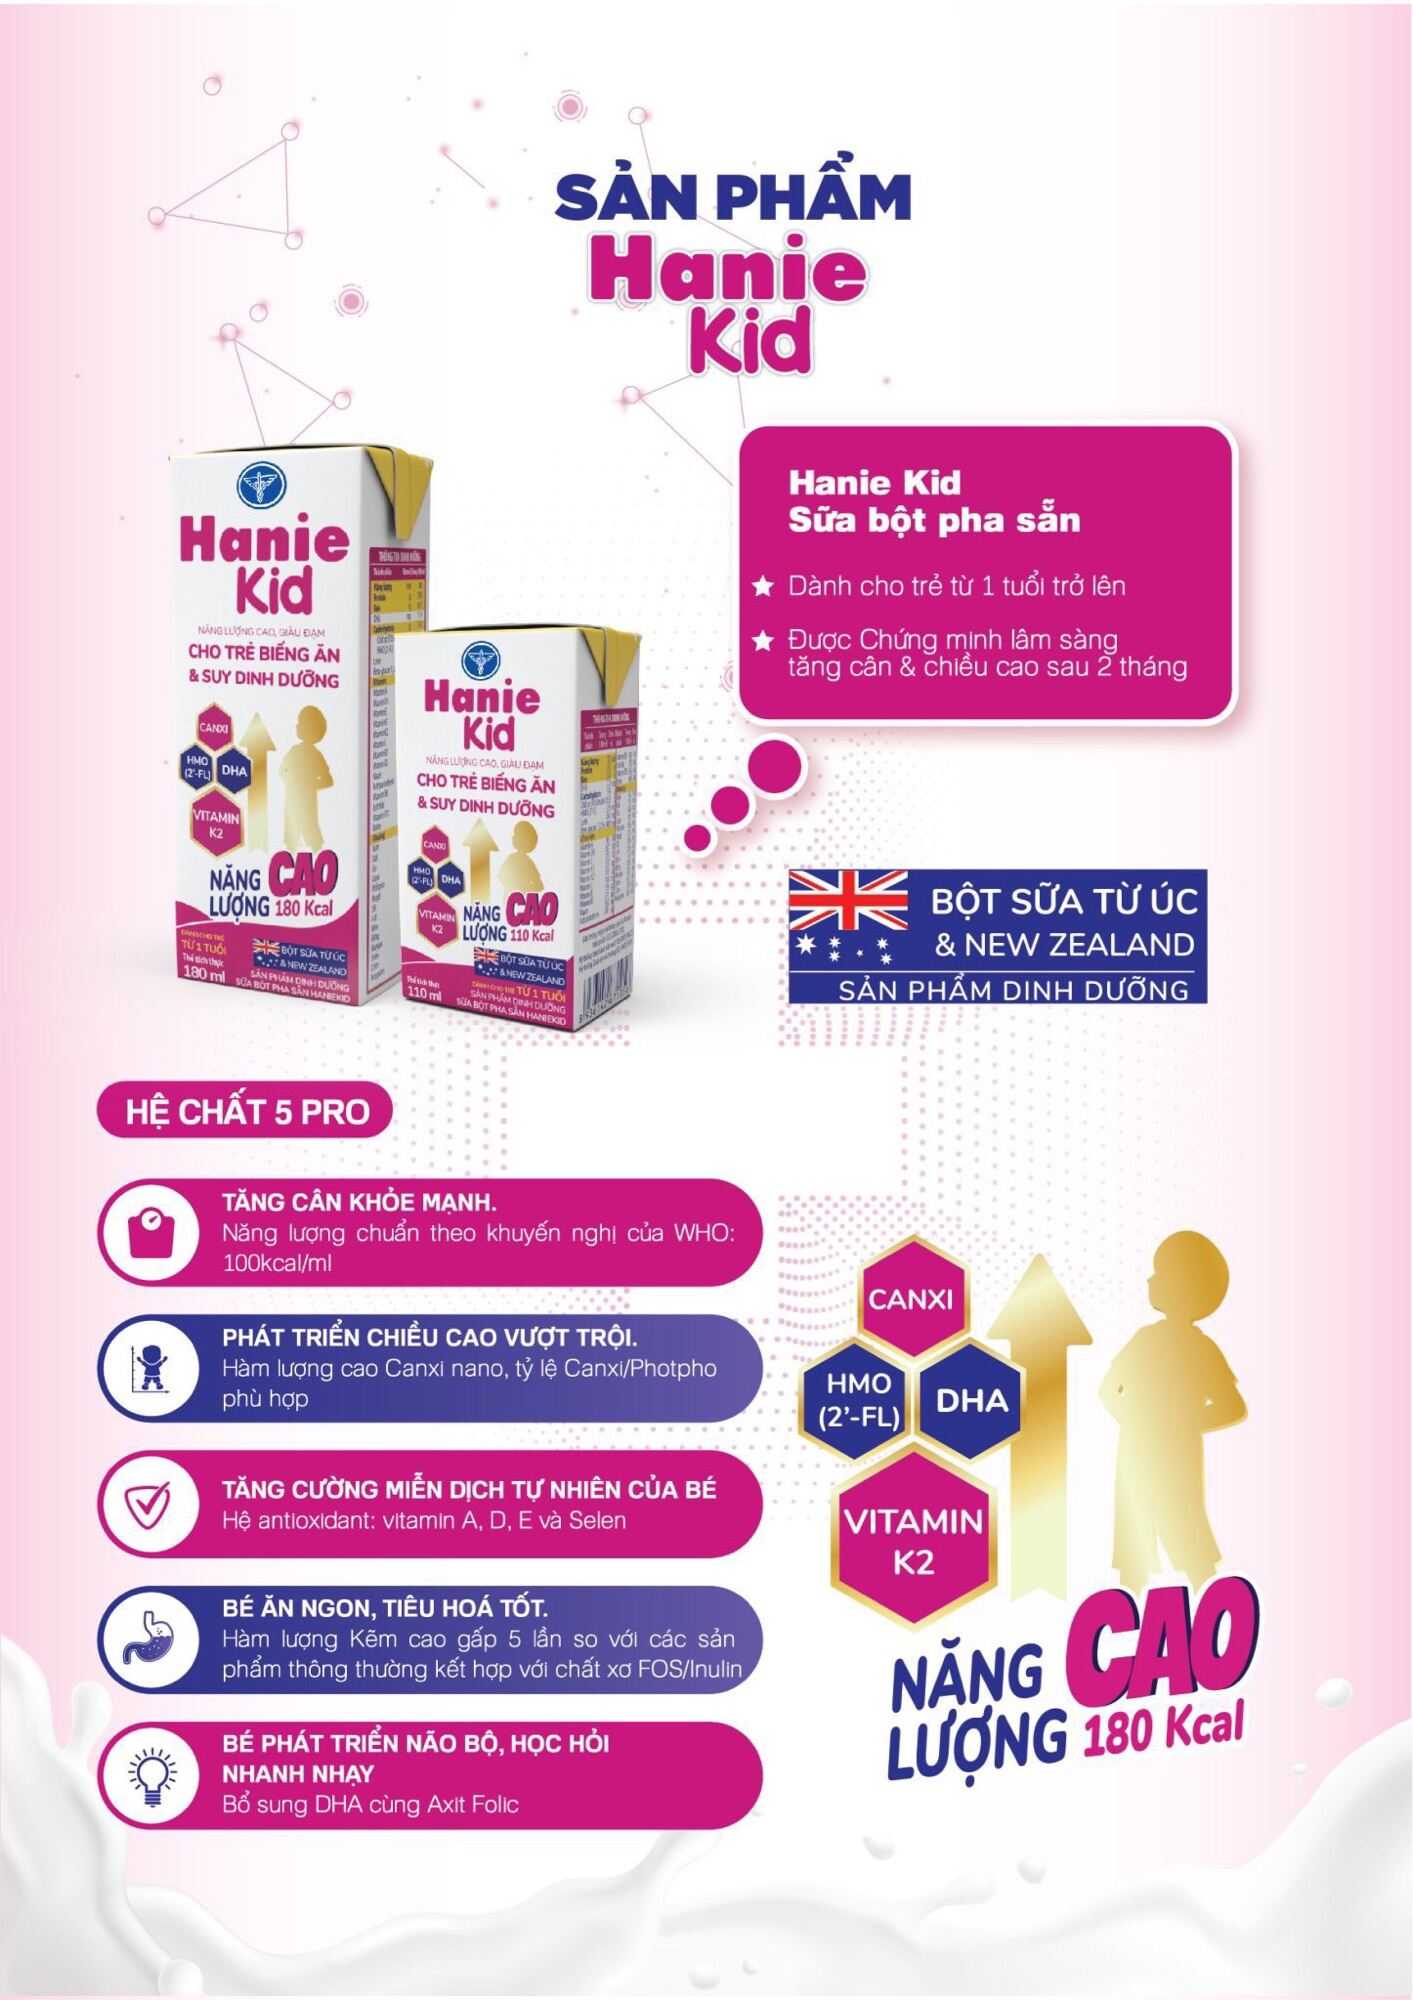 Sữa công thức pha sẵn Nutricare Hanie Kid dinh dưỡng cho trẻ biếng ăn và suy dinh dưỡng, cho trẻ từ 1 tuổi [Thùng 48H x 110ml]